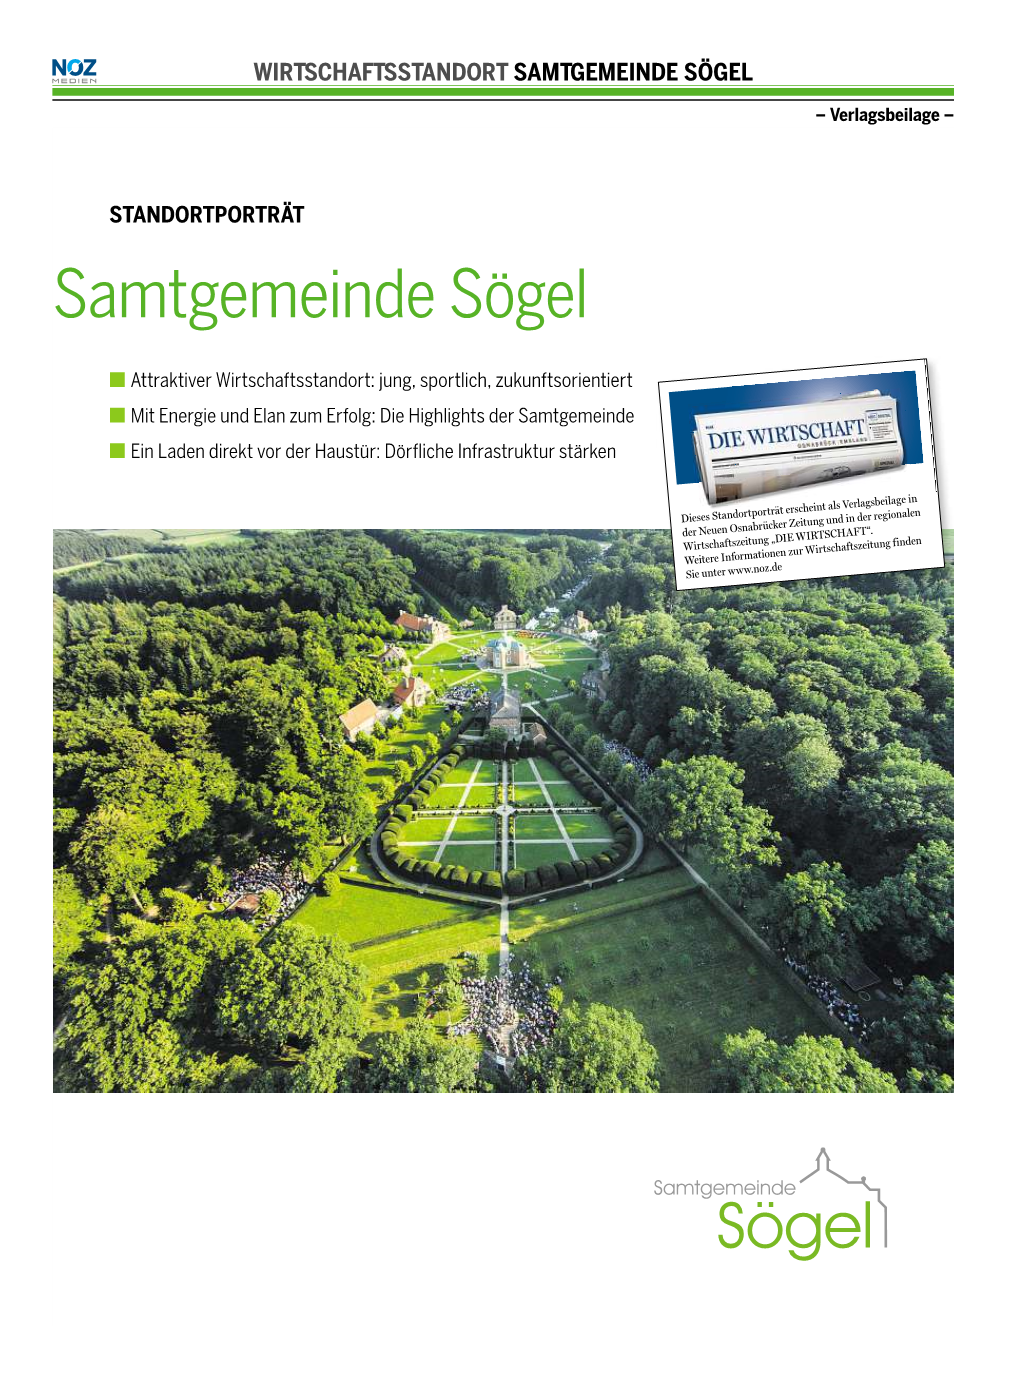 Samtgemeinde Sögel